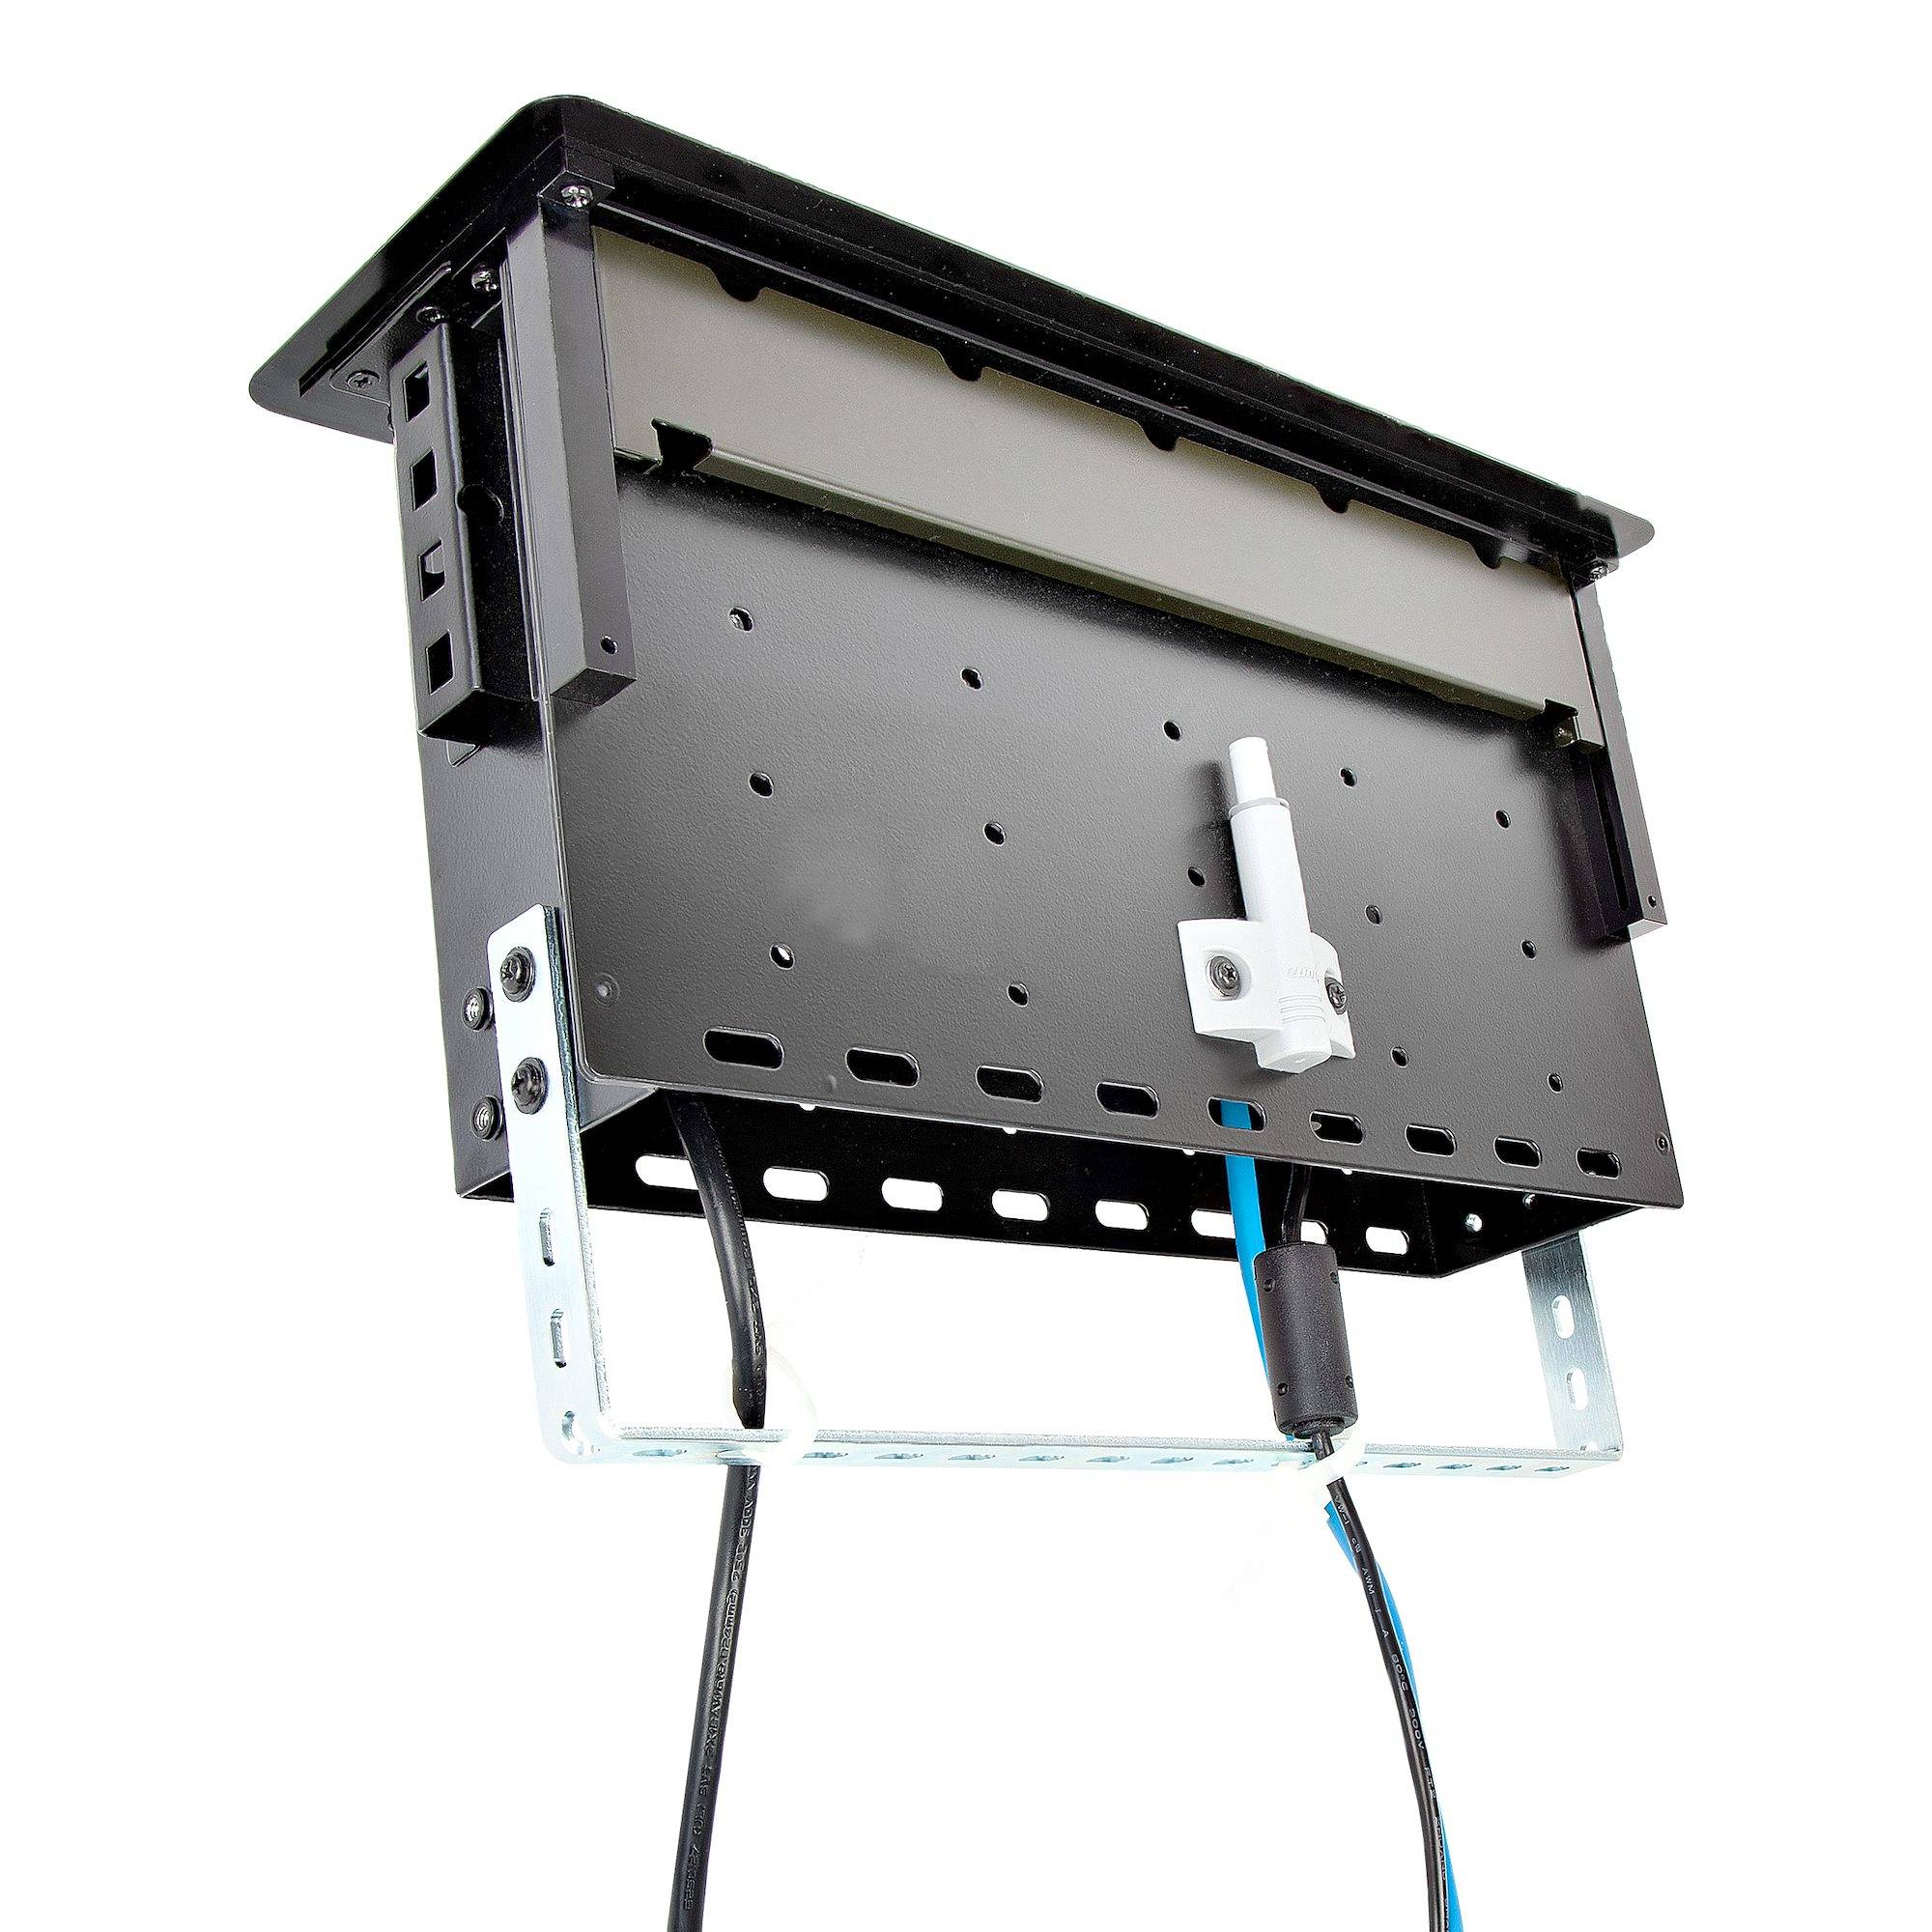 Rca Informatique - image du produit : TABLE BOX LAPTOP DOCK + POWER